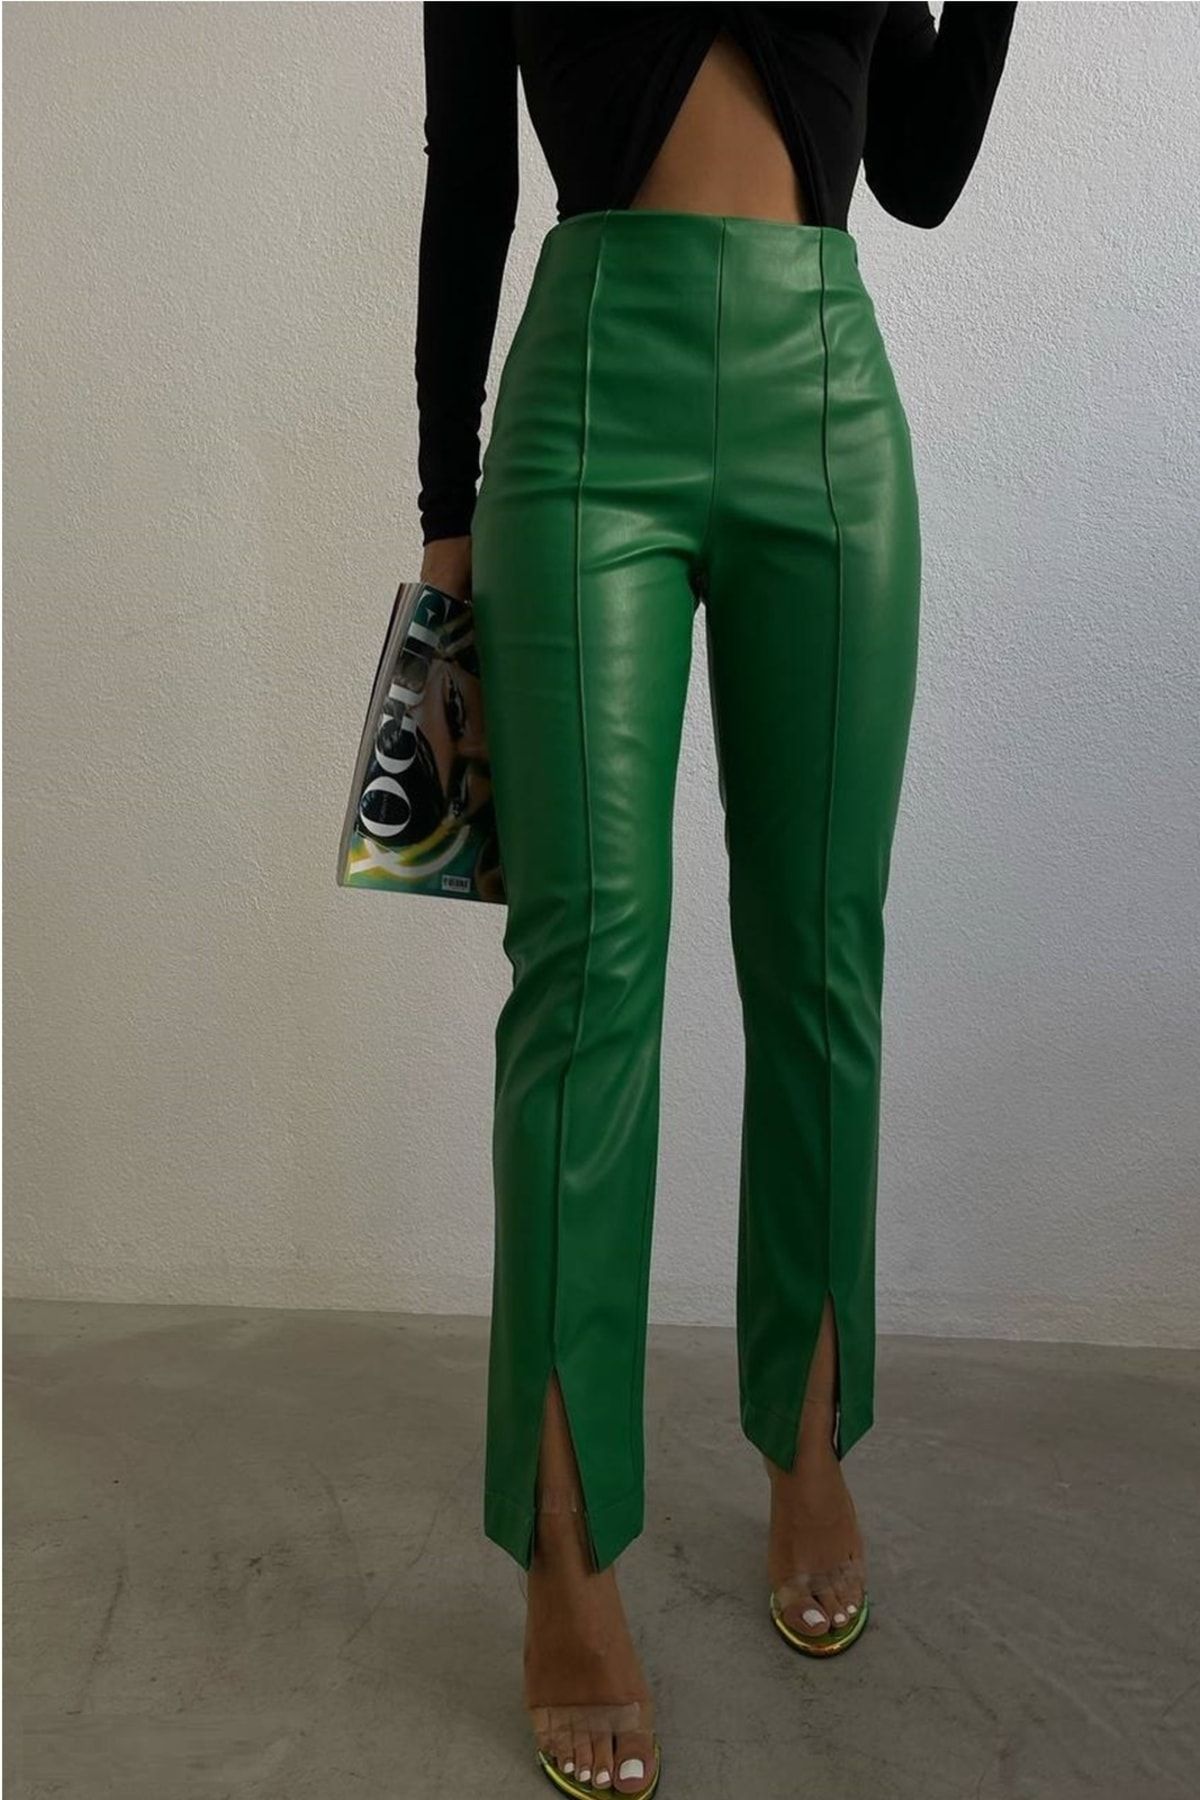 lovebox Kadın Yüksek Bel Yırtmaç Paça Detaylı Yeşil Suni Deri Pantolon 200022